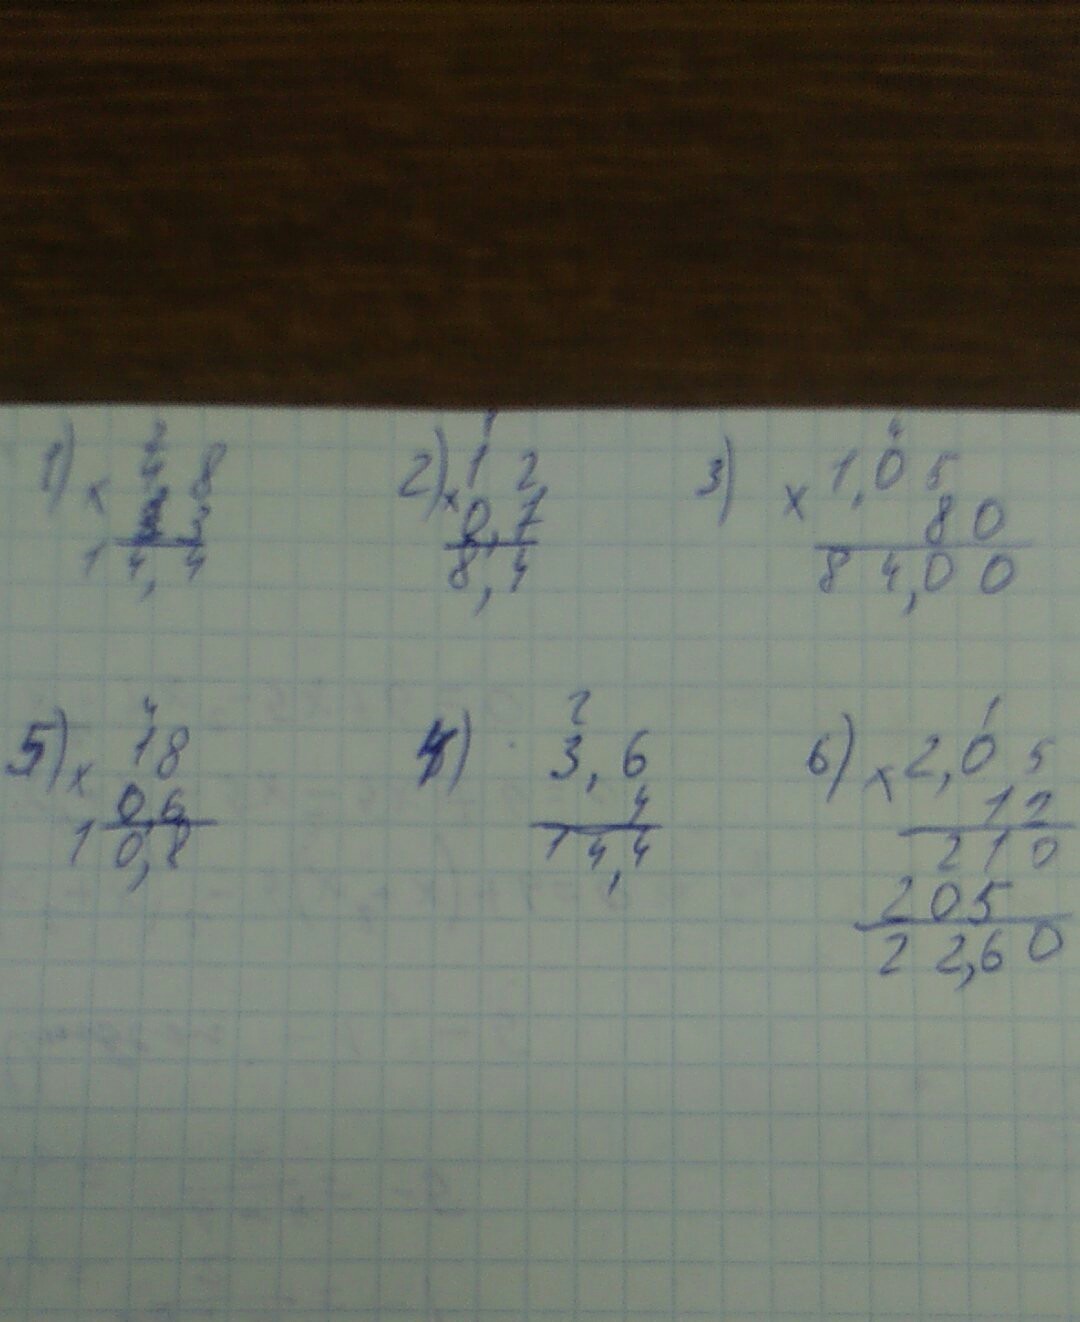 Решение 3 3 81 2. 1.5/6-0,5•(-4/3) Решить. (5-2,8)*2,4+1,12:2,6 Столбиком. 2,3-1,5+0,7-0,02 Столбиком. (6,3÷1,4-2,05 решения столбиком.